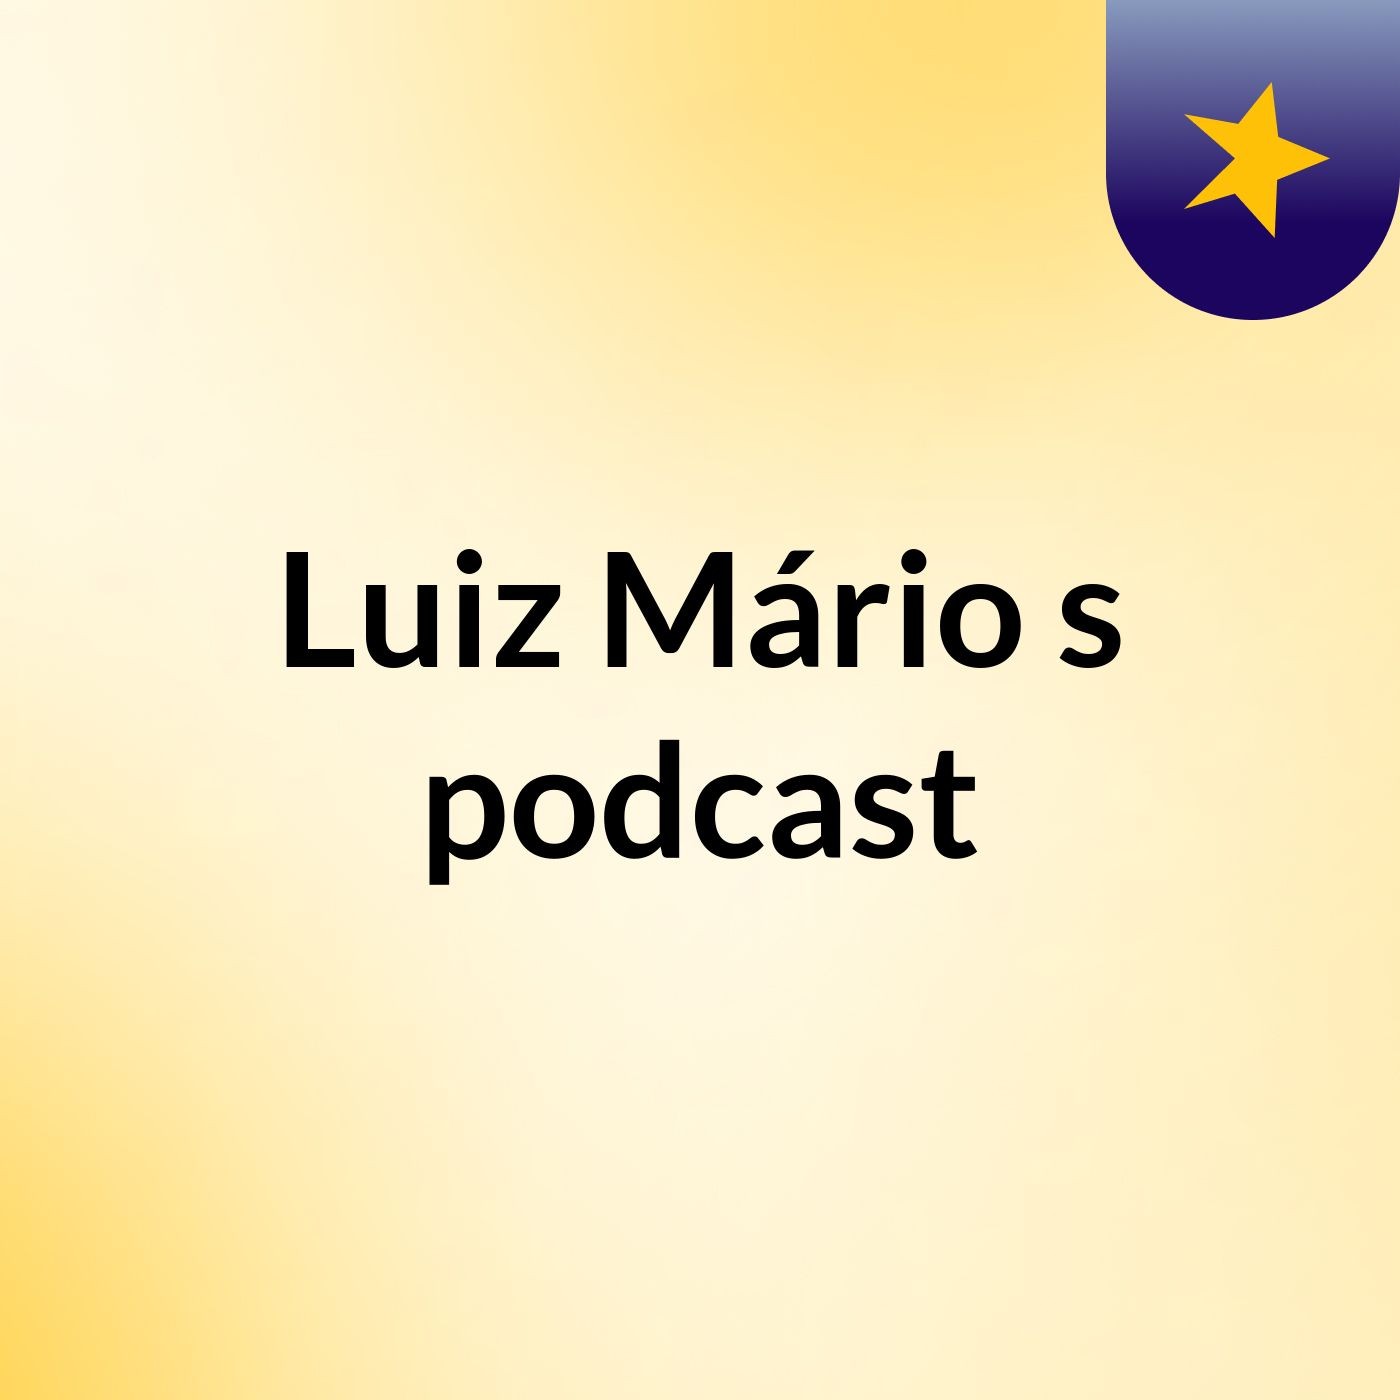 Luiz Mário's podcast